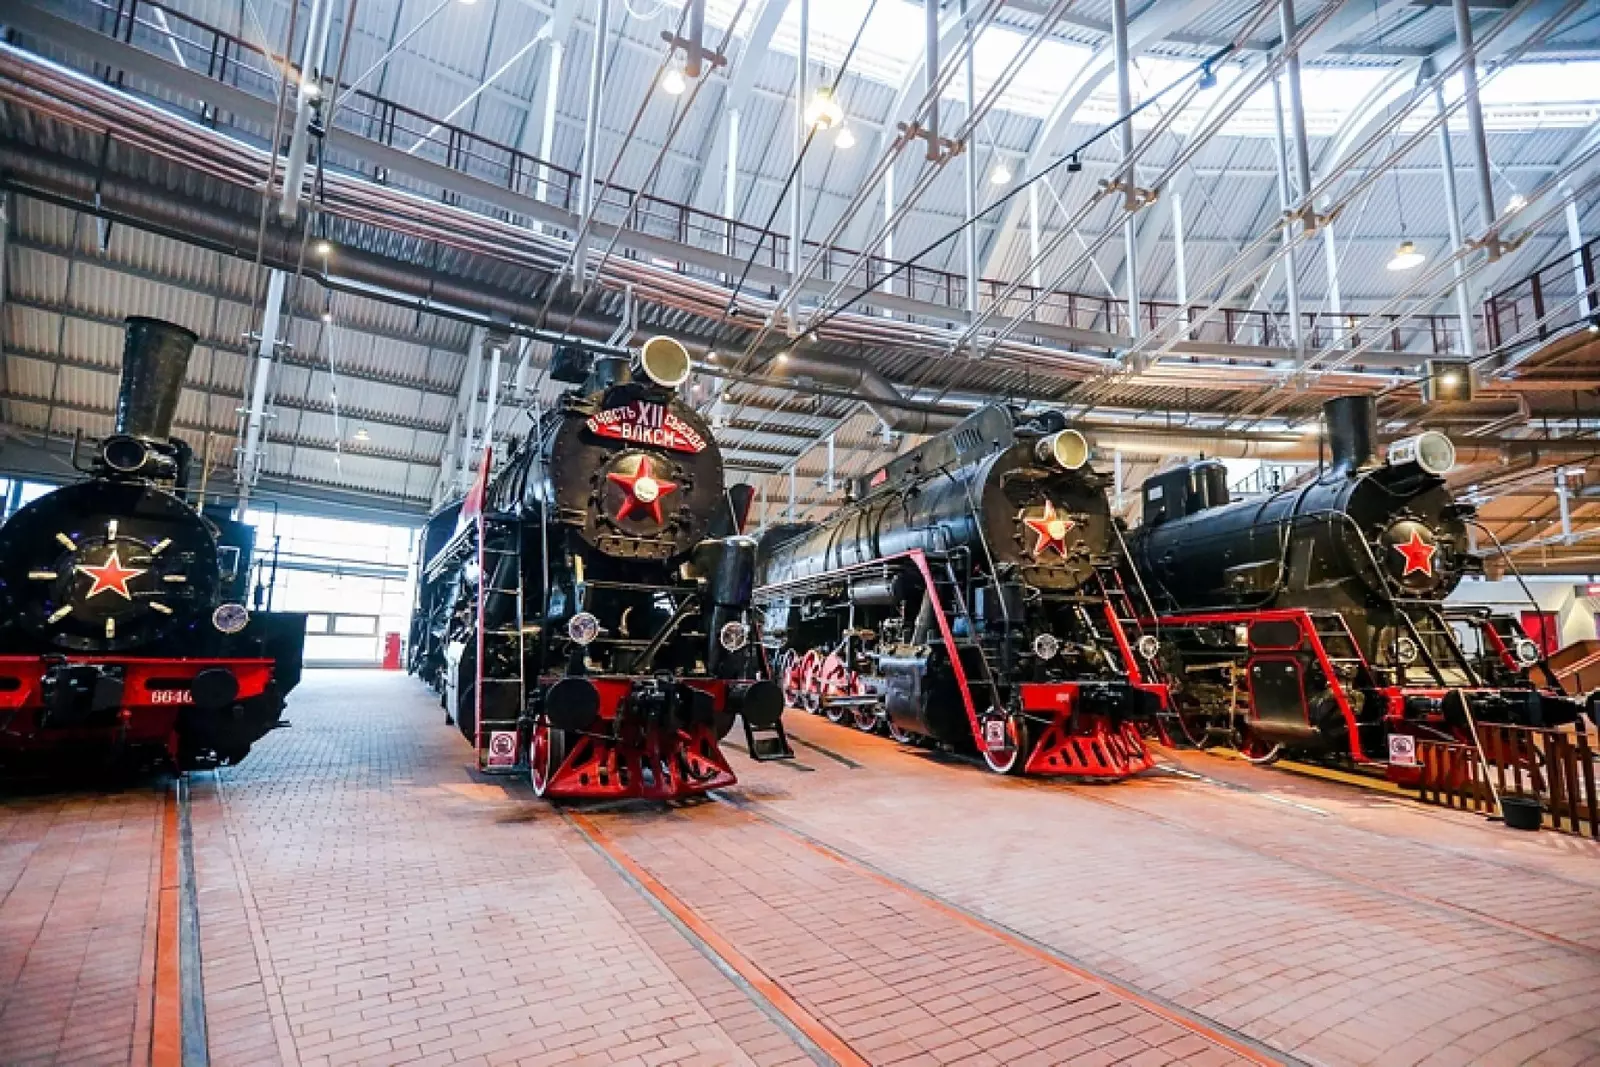 Вход в Музей железных дорог России будет бесплатный для студентов и Татьян с 25 по 31 января 